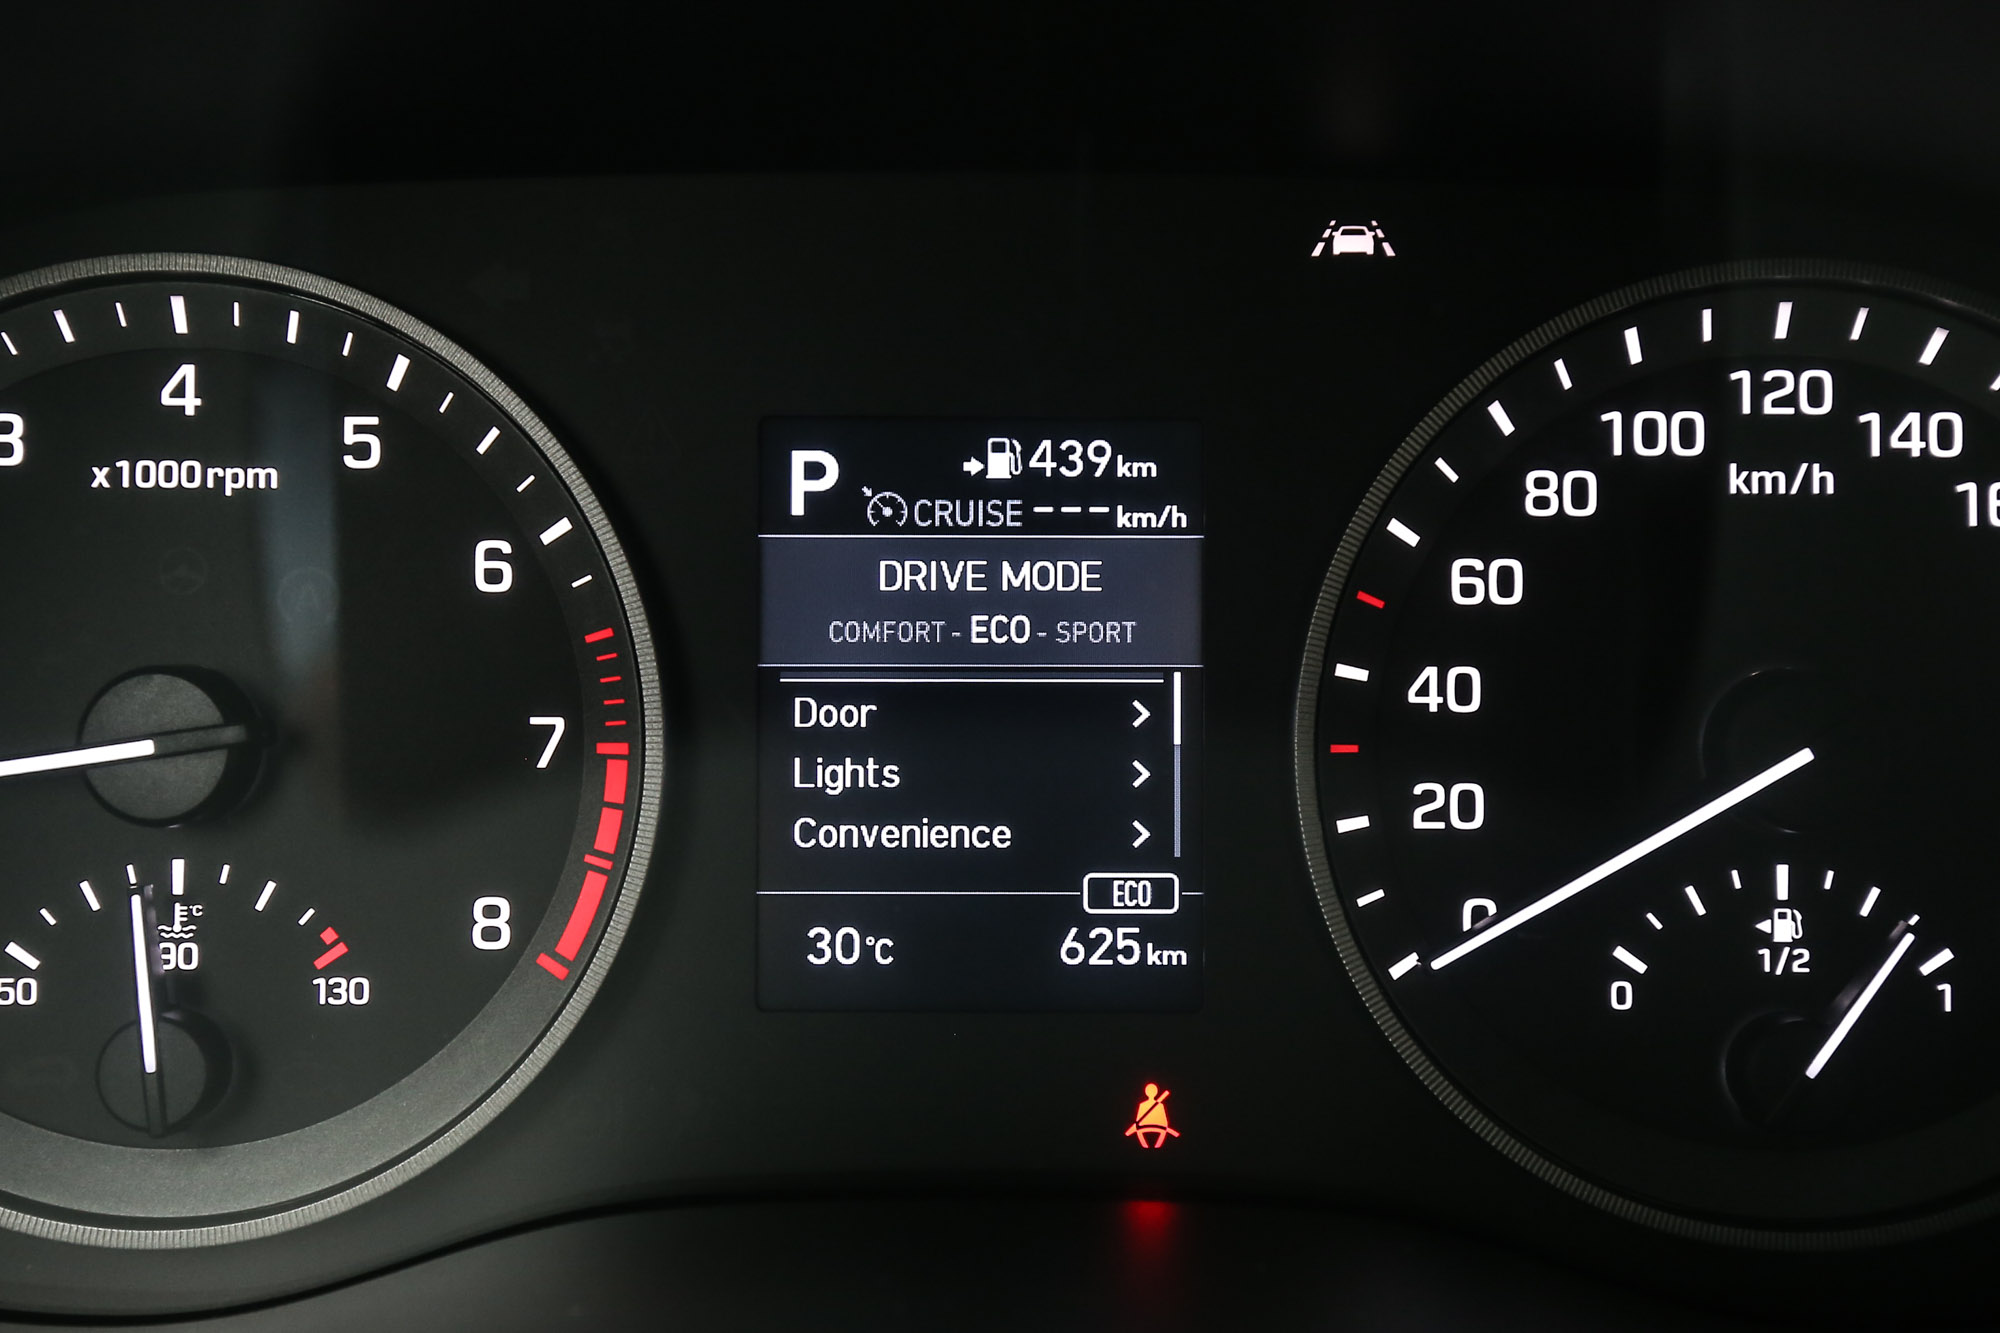 DRIVE MODE 駕駛模式選擇也會出現在儀表板上。